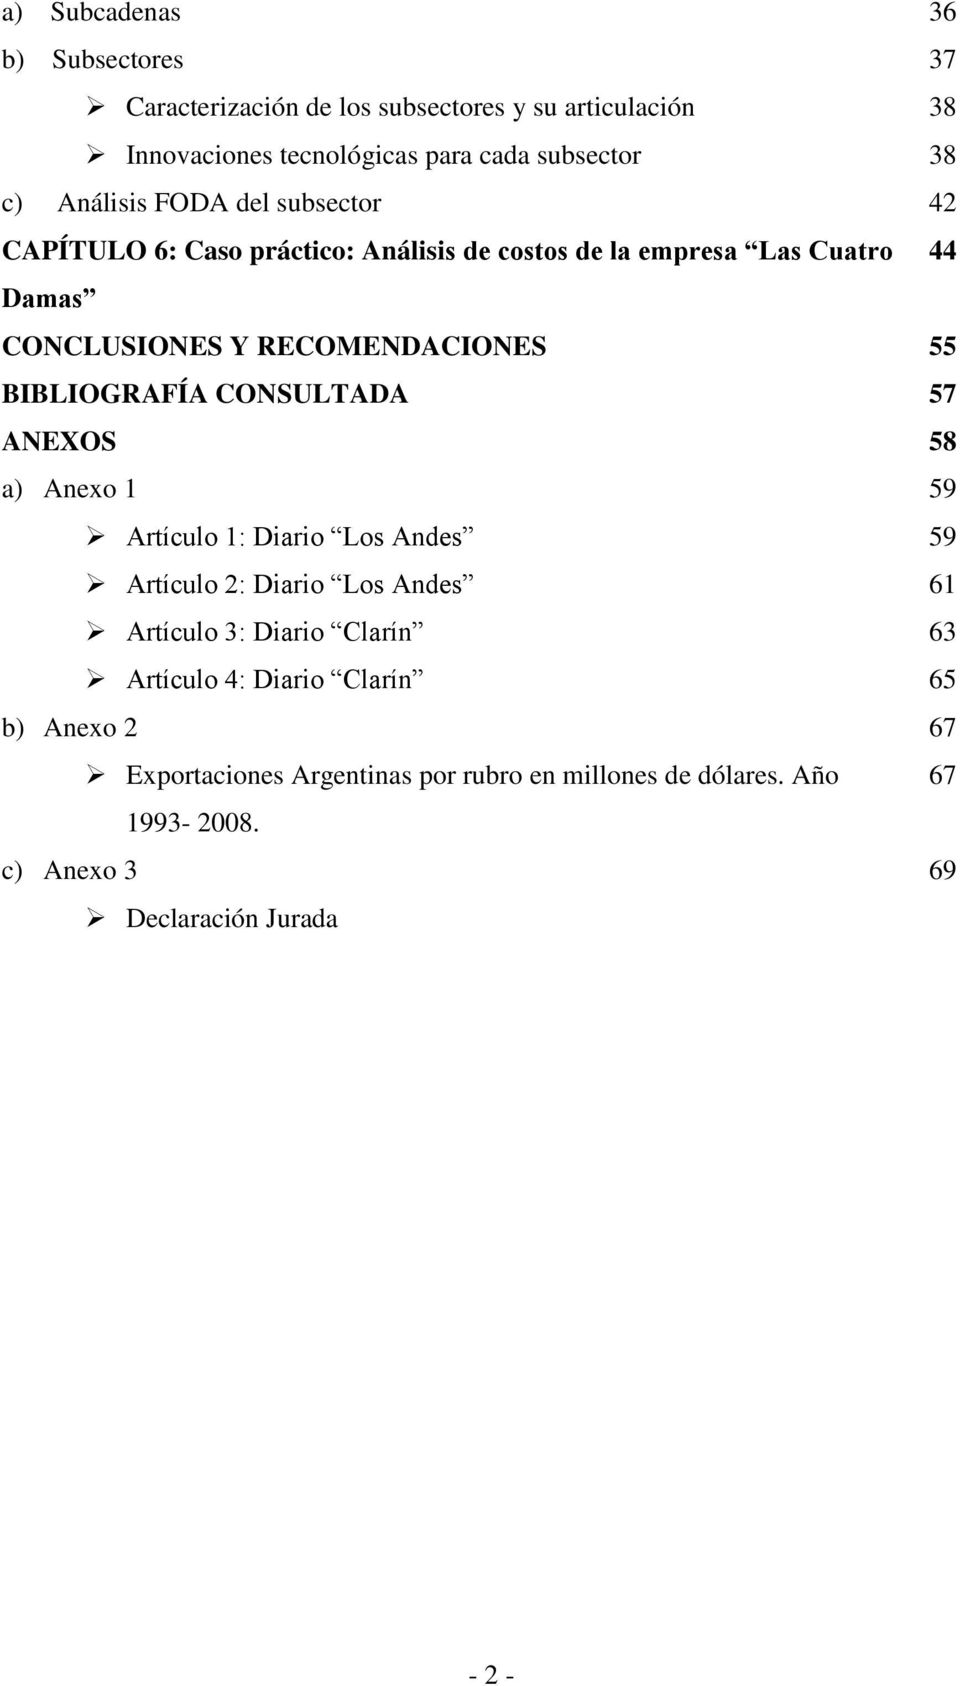 BIBLIOGRAFÍA CONSULTADA 57 ANEXOS 58 a) Anexo 1 Artículo 1: Diario Los Andes Artículo 2: Diario Los Andes Artículo 3: Diario Clarín Artículo 4: